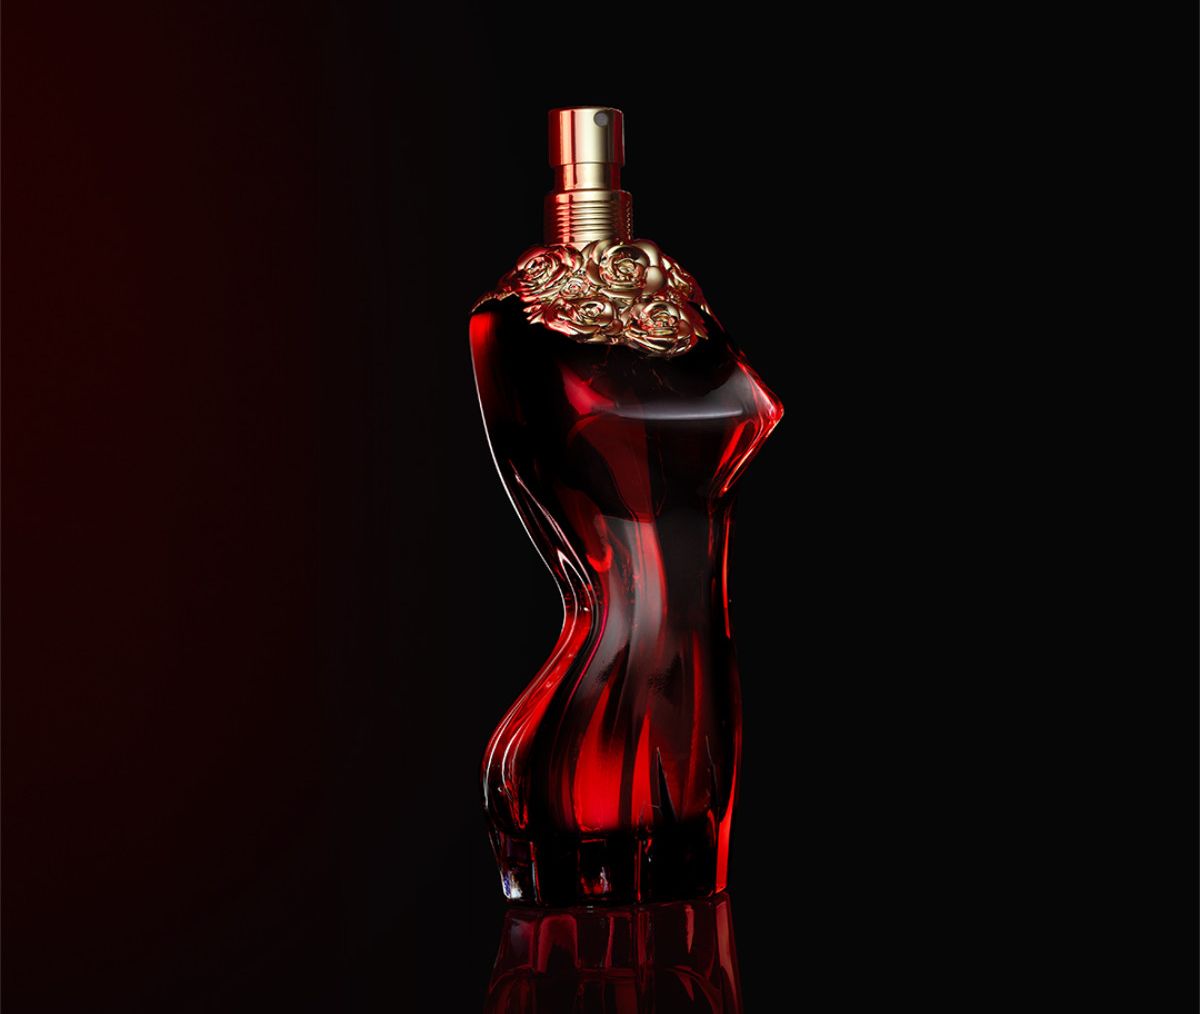 Jean Paul Gaultier - La Belle Le Parfum